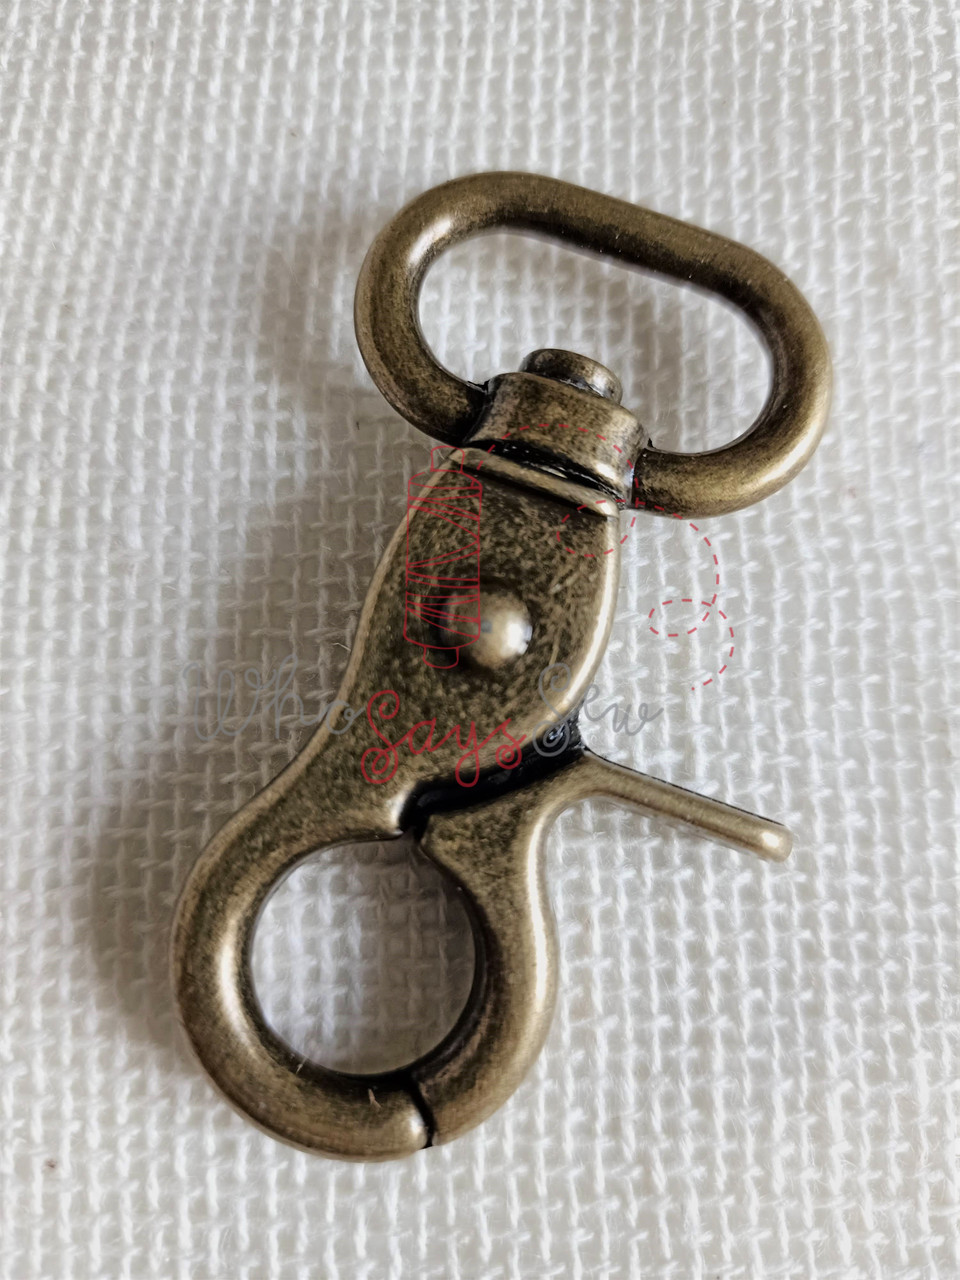 2x Wide Open 2cm (3/4) Swivel Snap Hooks in Antique Brass